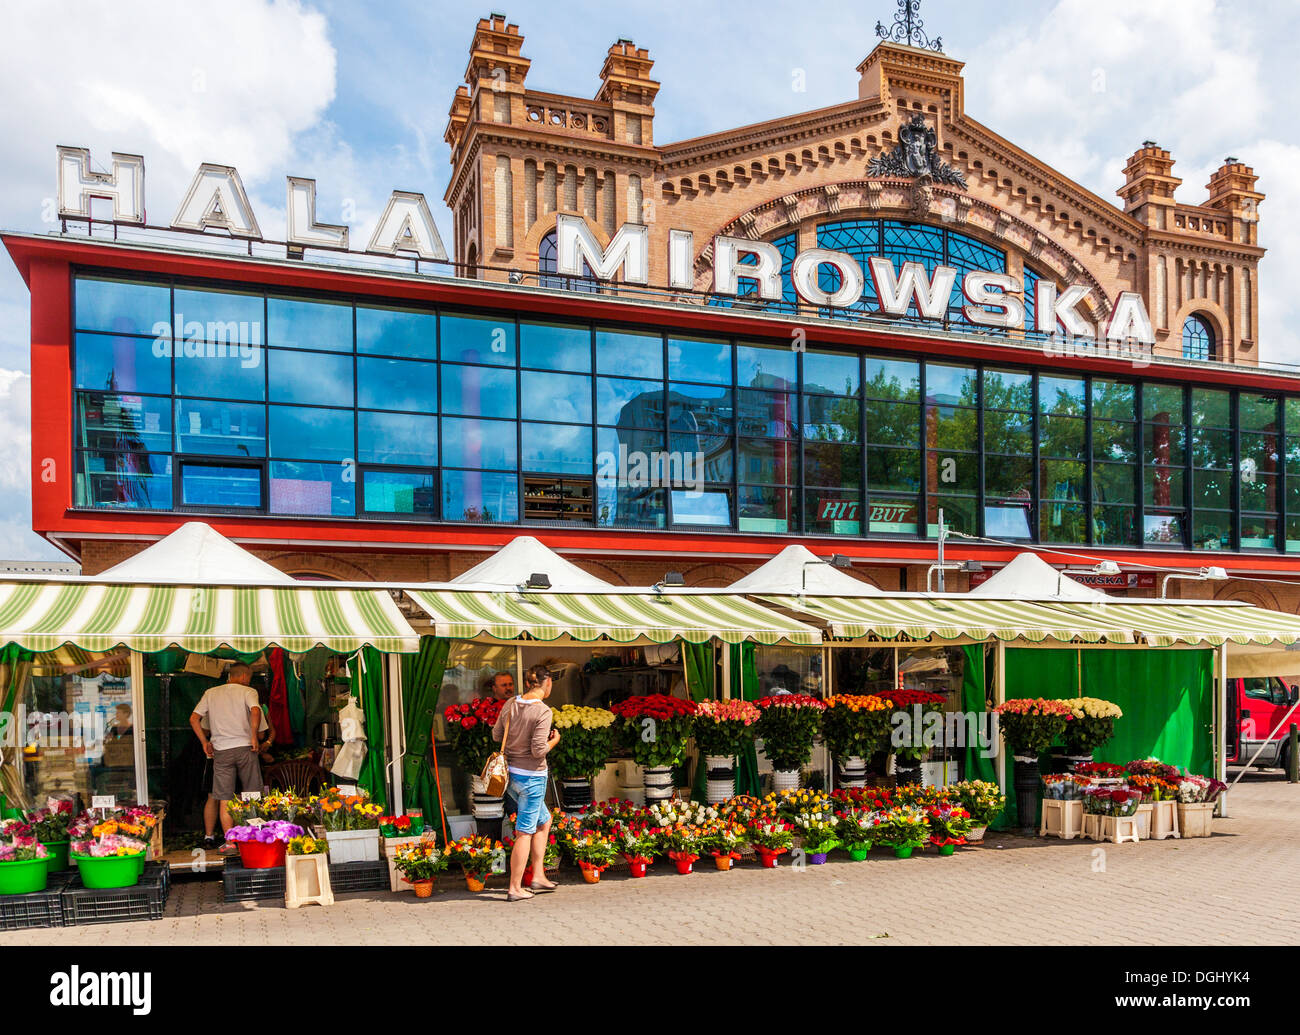 Flower stalls outside Hala Mirowska market in Warsaw. Stock Photo